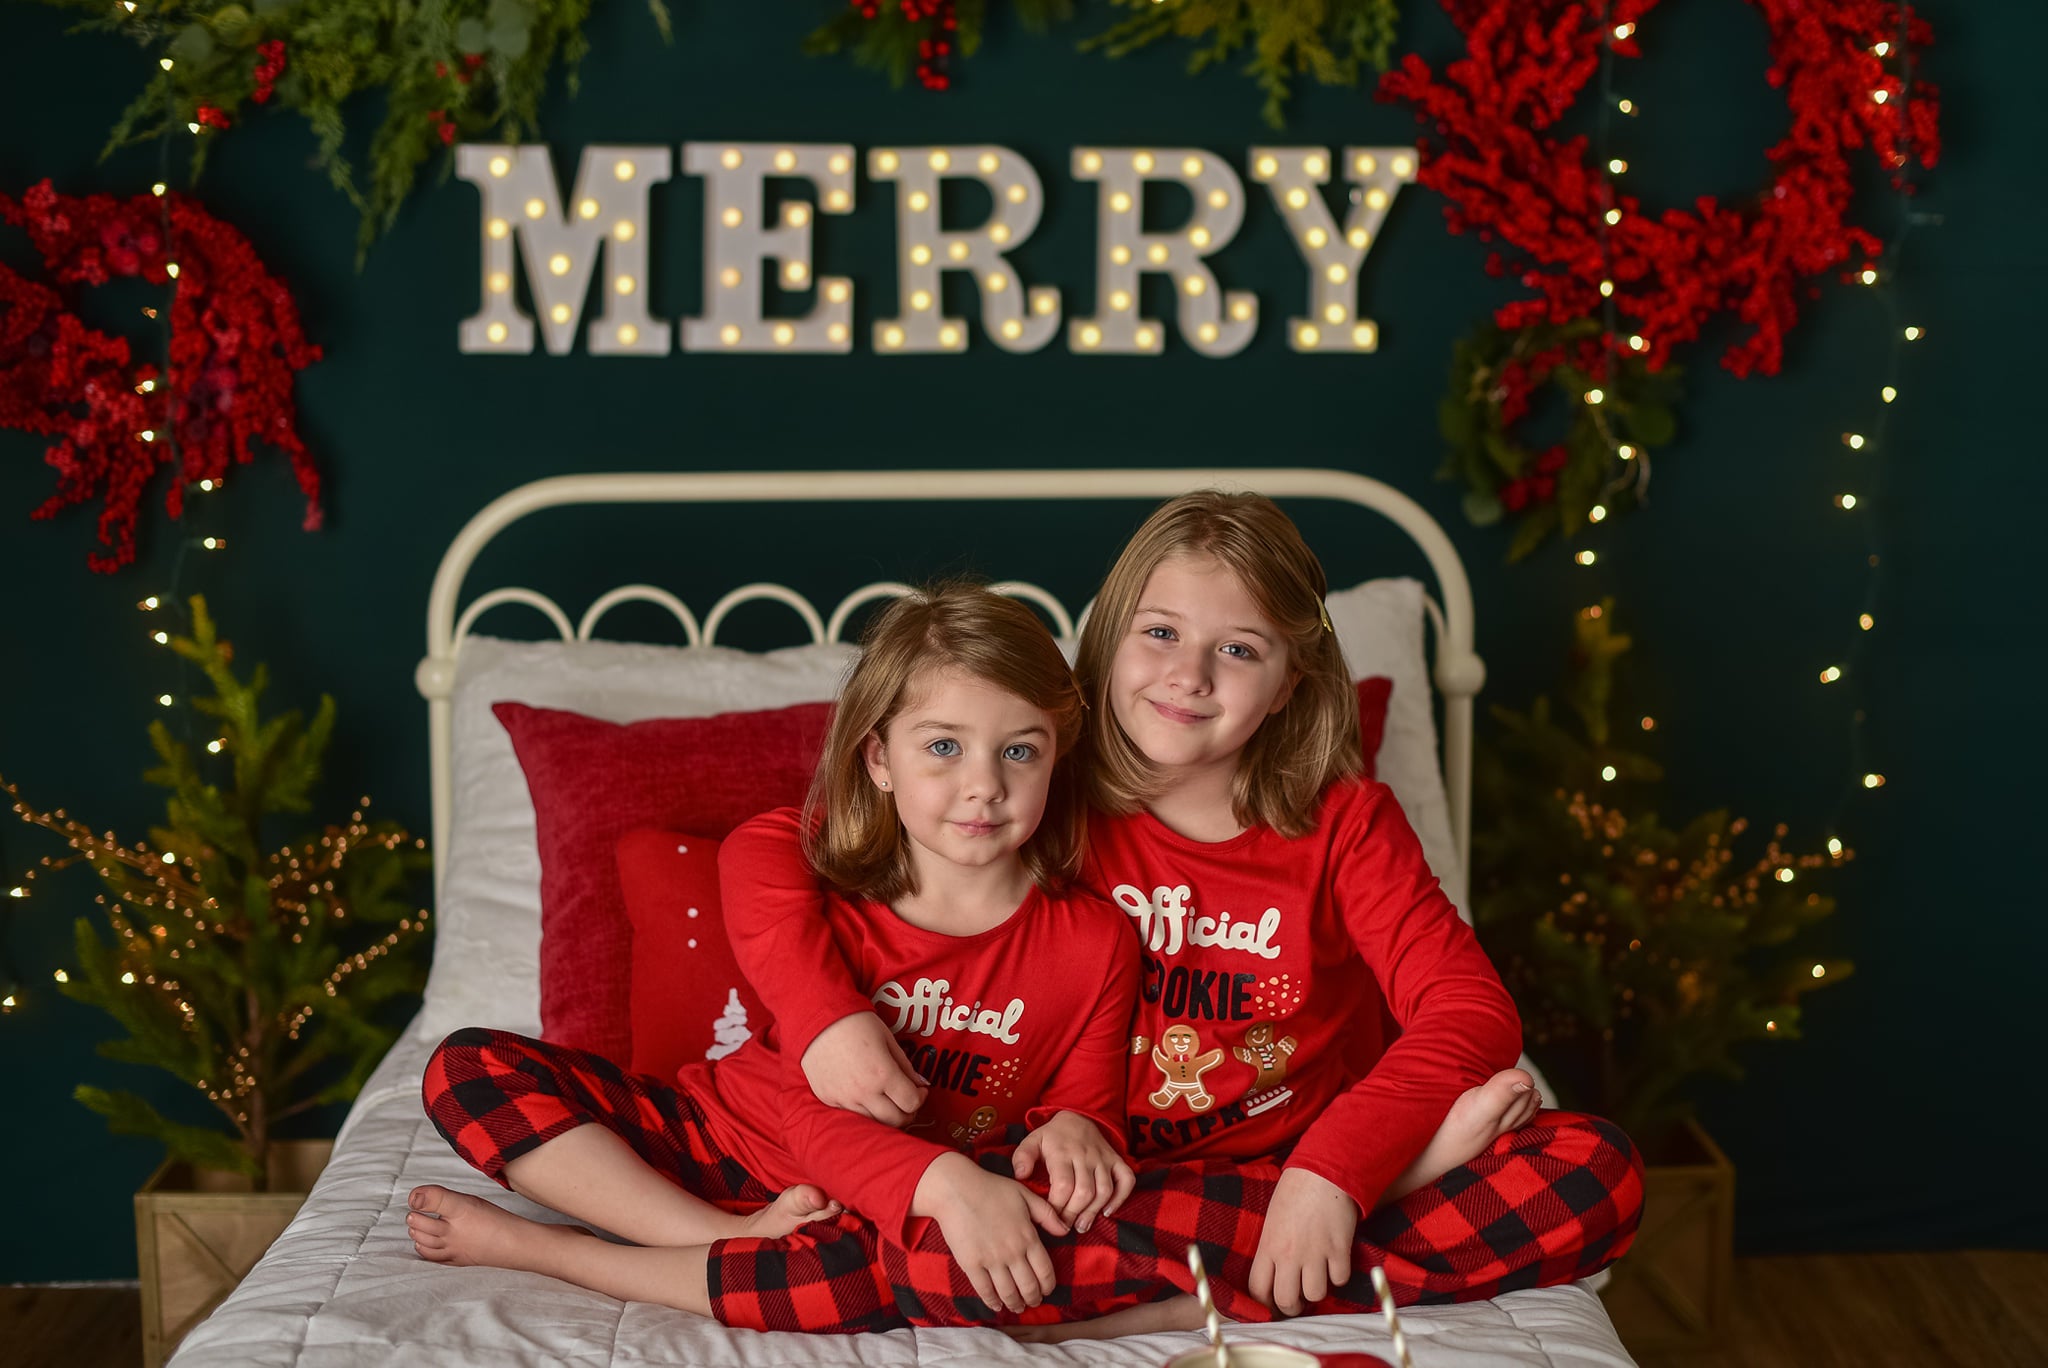 Kate Joyeux Noël Scintillait Tête de lit Toile de Fond conçue par Mandy Ringe Photographie